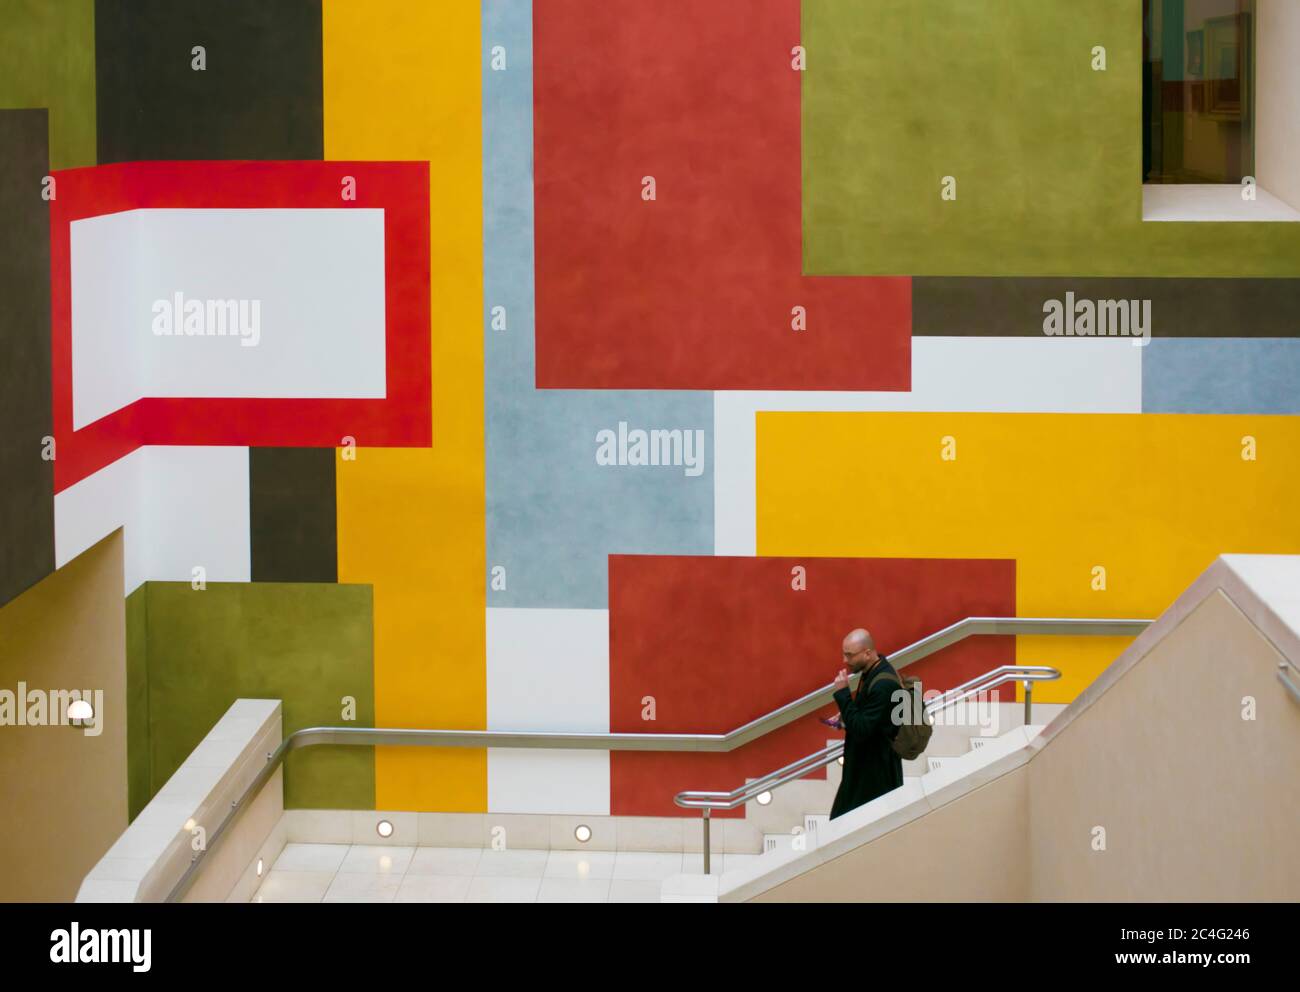 Homme descendant un escalier coloré à la Tate Britain Gallery, Londres, Angleterre, Royaume-Uni Banque D'Images